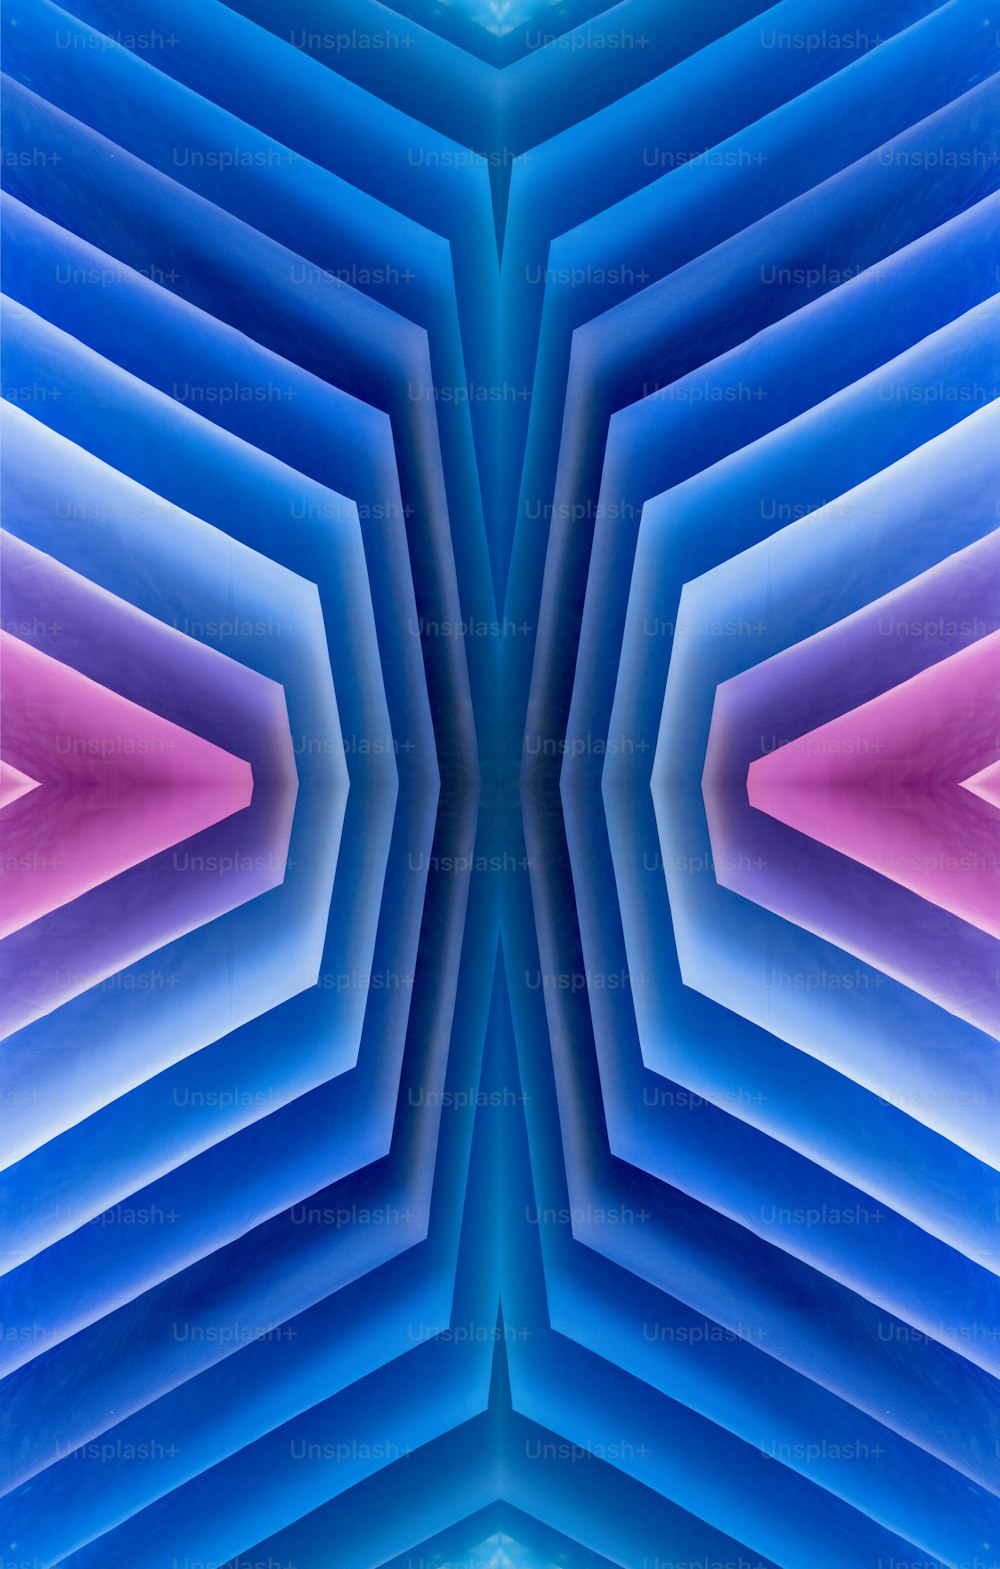 Une image abstraite d’une structure bleue et rose